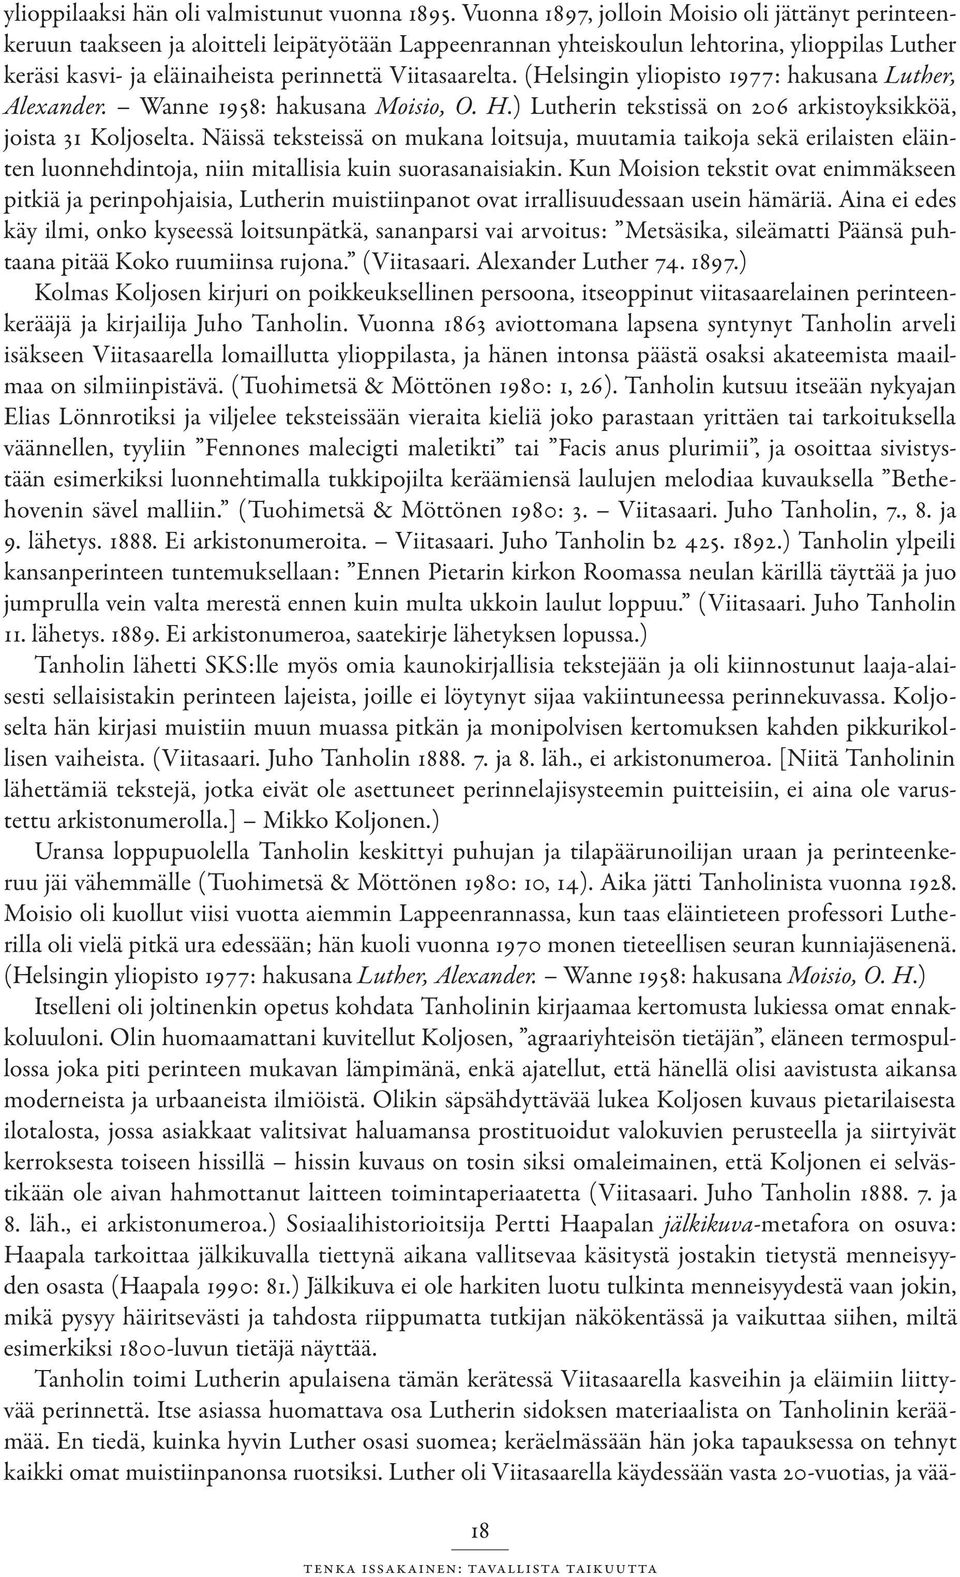 Viitasaarelta. (Helsingin yliopisto 1977: hakusana Luther, Alexander. Wanne 1958: hakusana Moisio, O. H.) Lutherin tekstissä on 206 arkistoyksikköä, joista 31 Koljoselta.